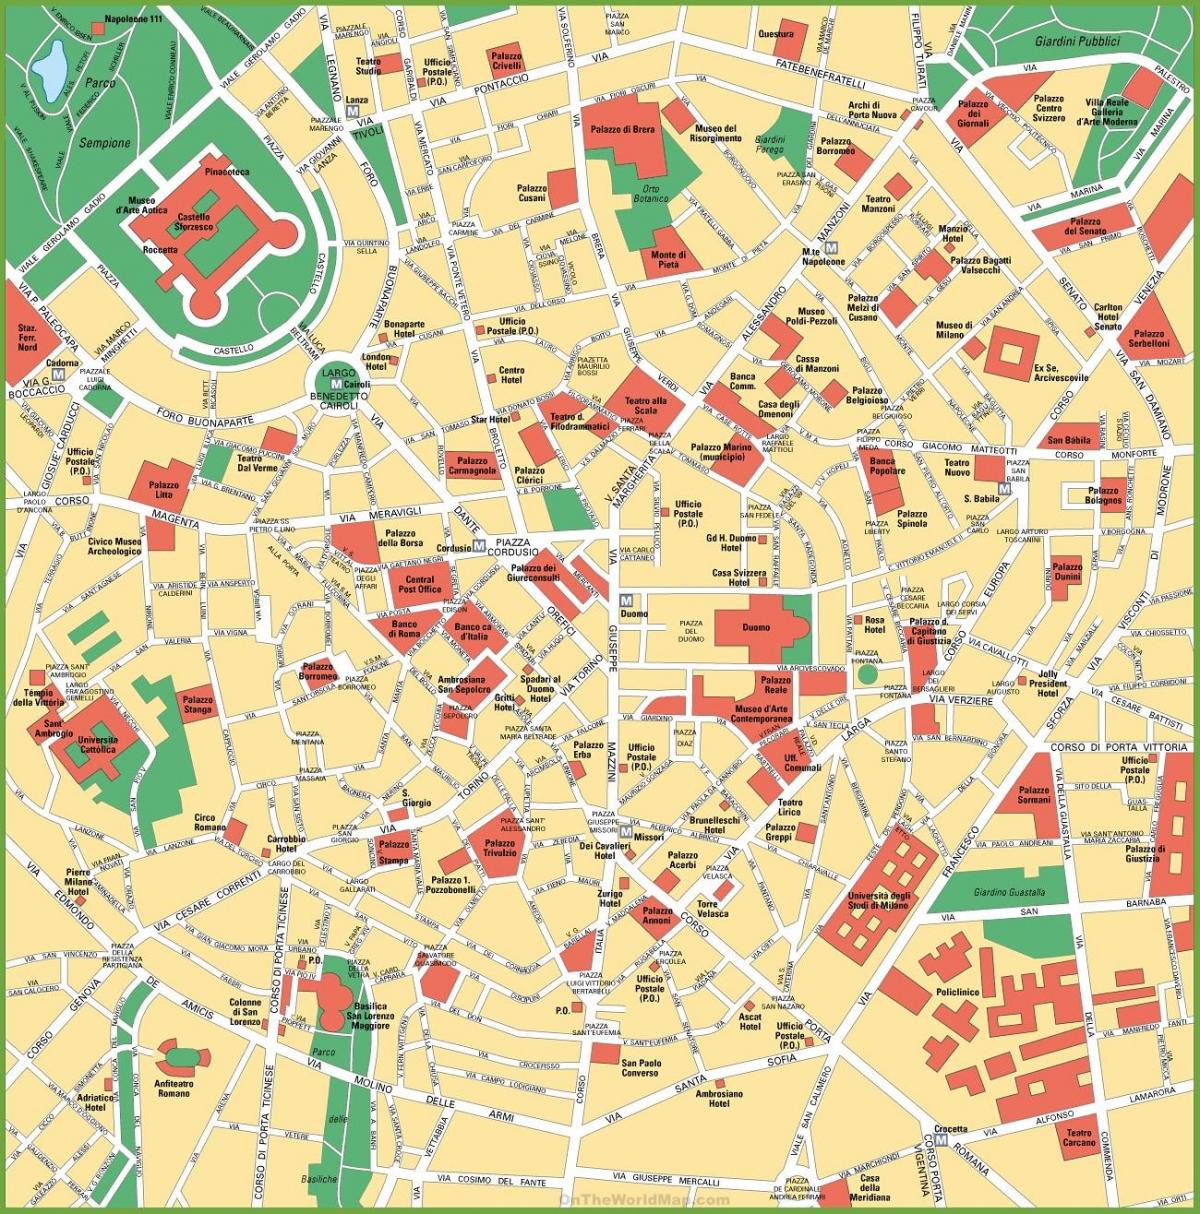 Mapa del centro de Milán